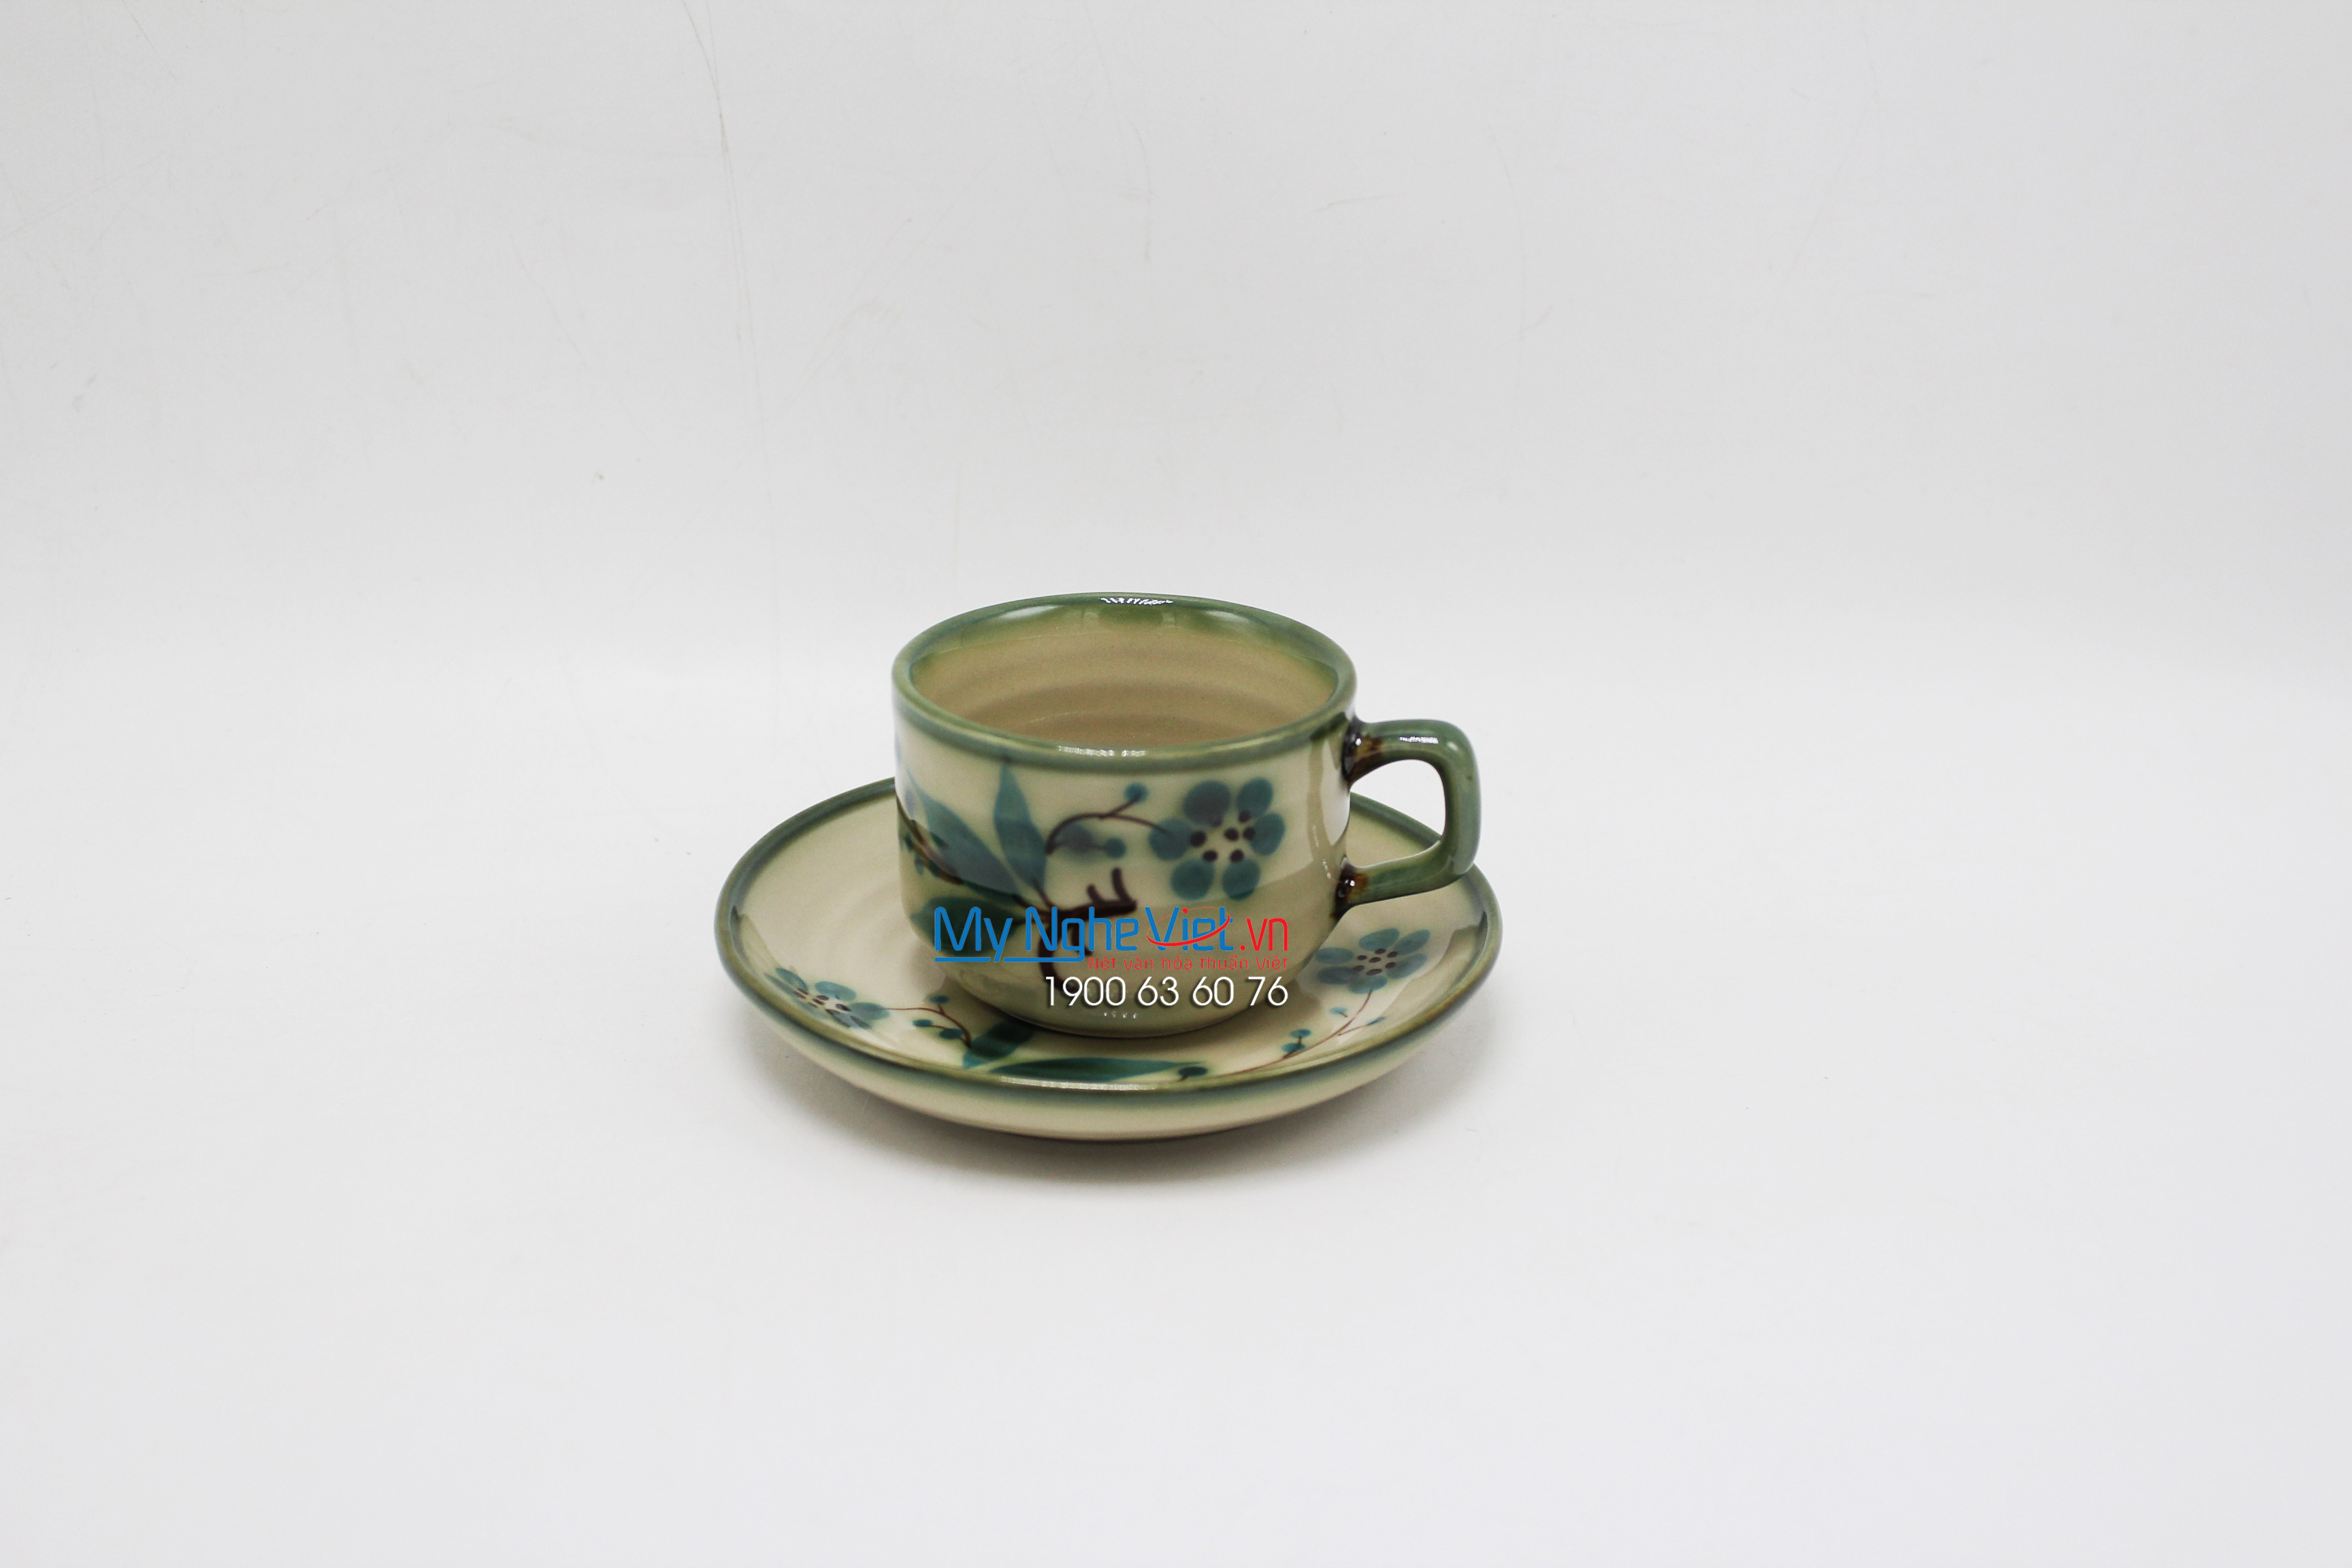 Bộ bình trà men bóng vẽ lá tre quai gốm cốc- MNV-TS022-3 